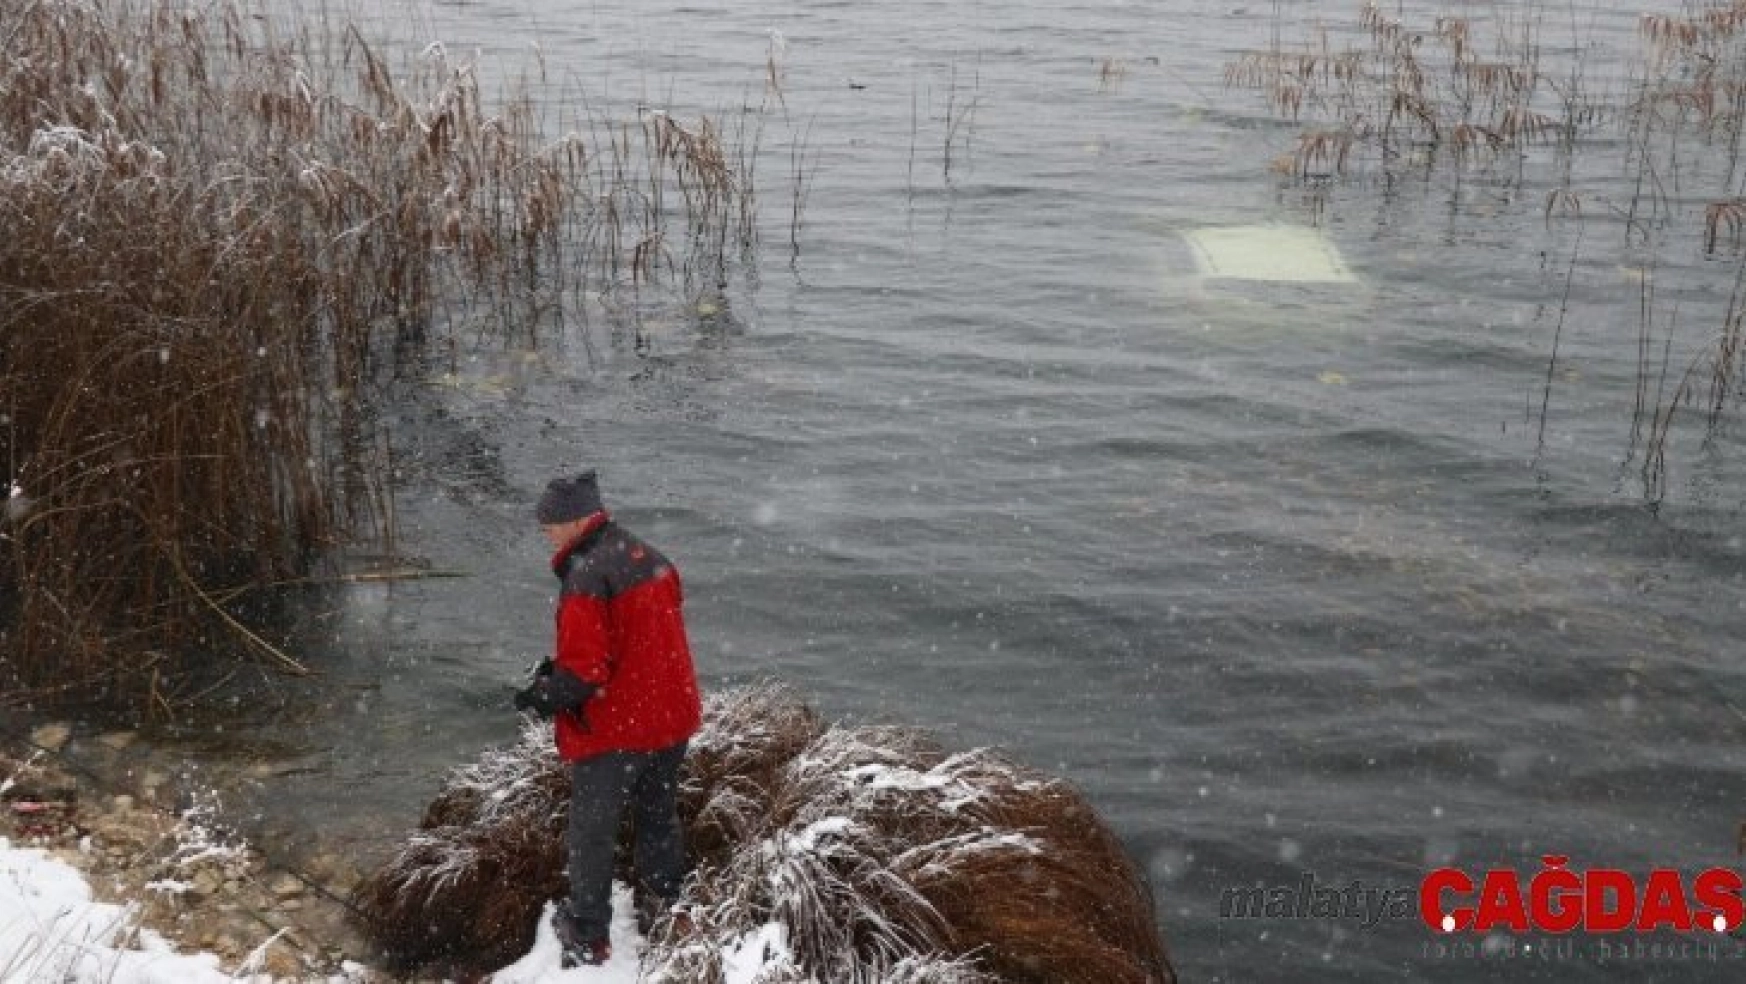 Abant Gölü'ne uçan otomobildeki 2 kişi yüzerek kurtuldu